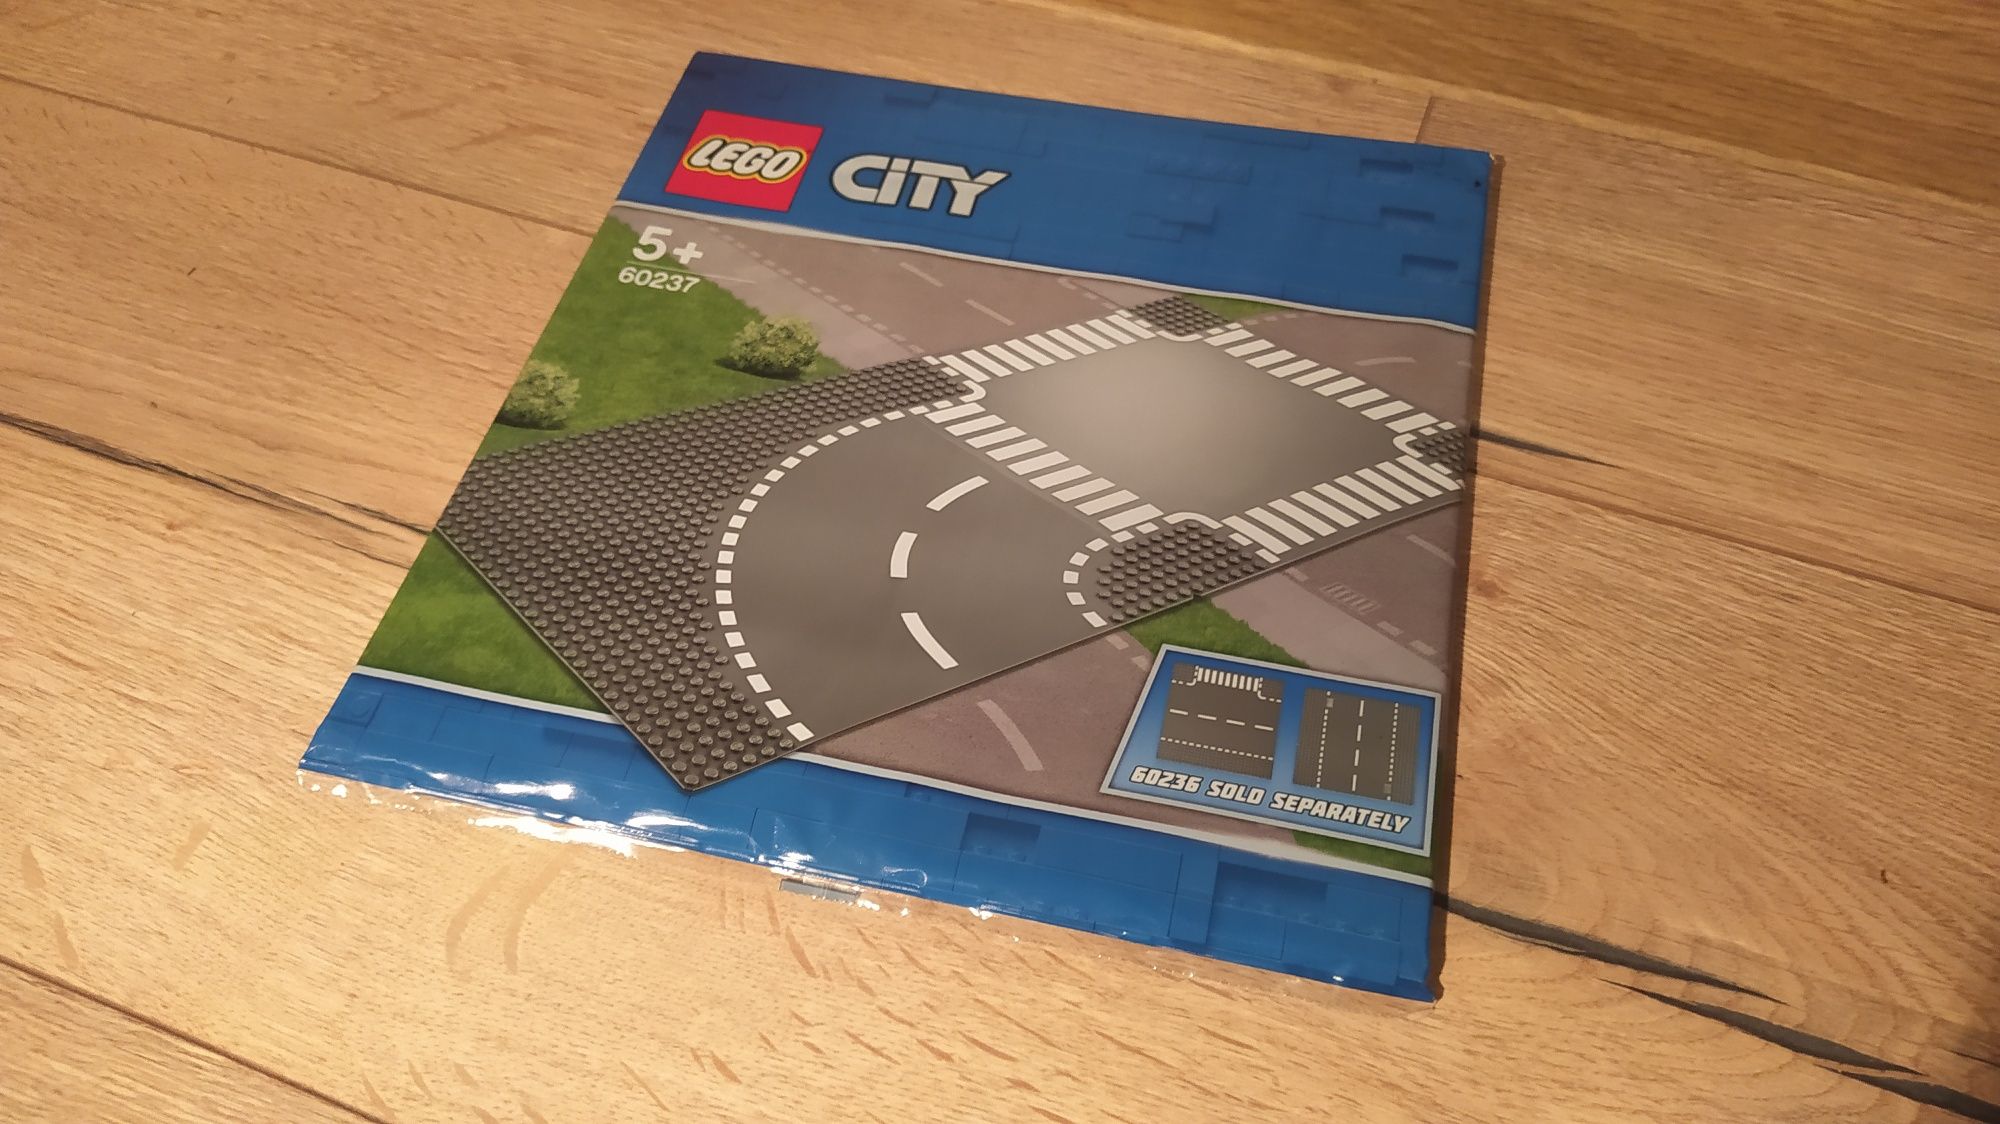 Nowe Lego City zakręt i skrzyżowanie 60237